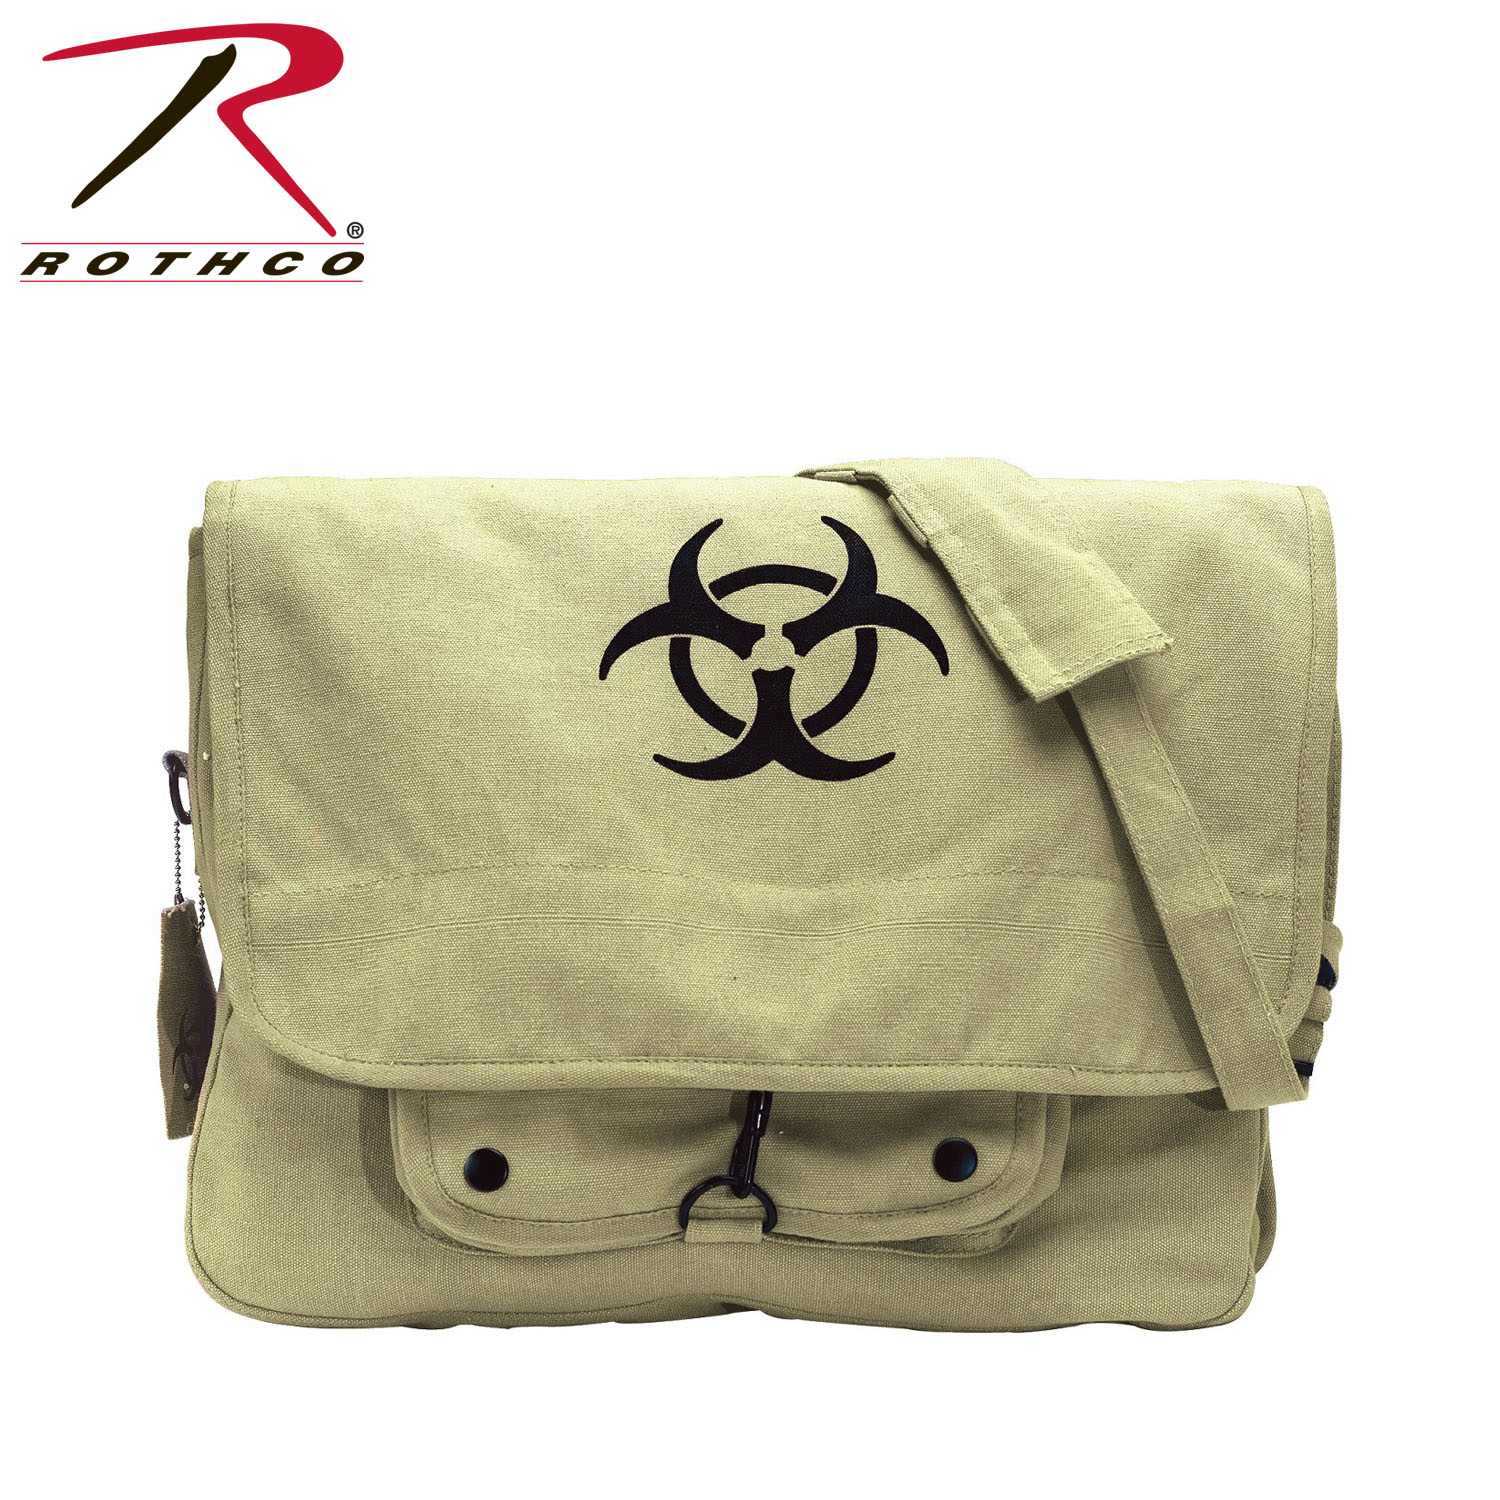 Rothco Vintage Canvas Paratrooper Bag w/ Bio-Hazard Symbol